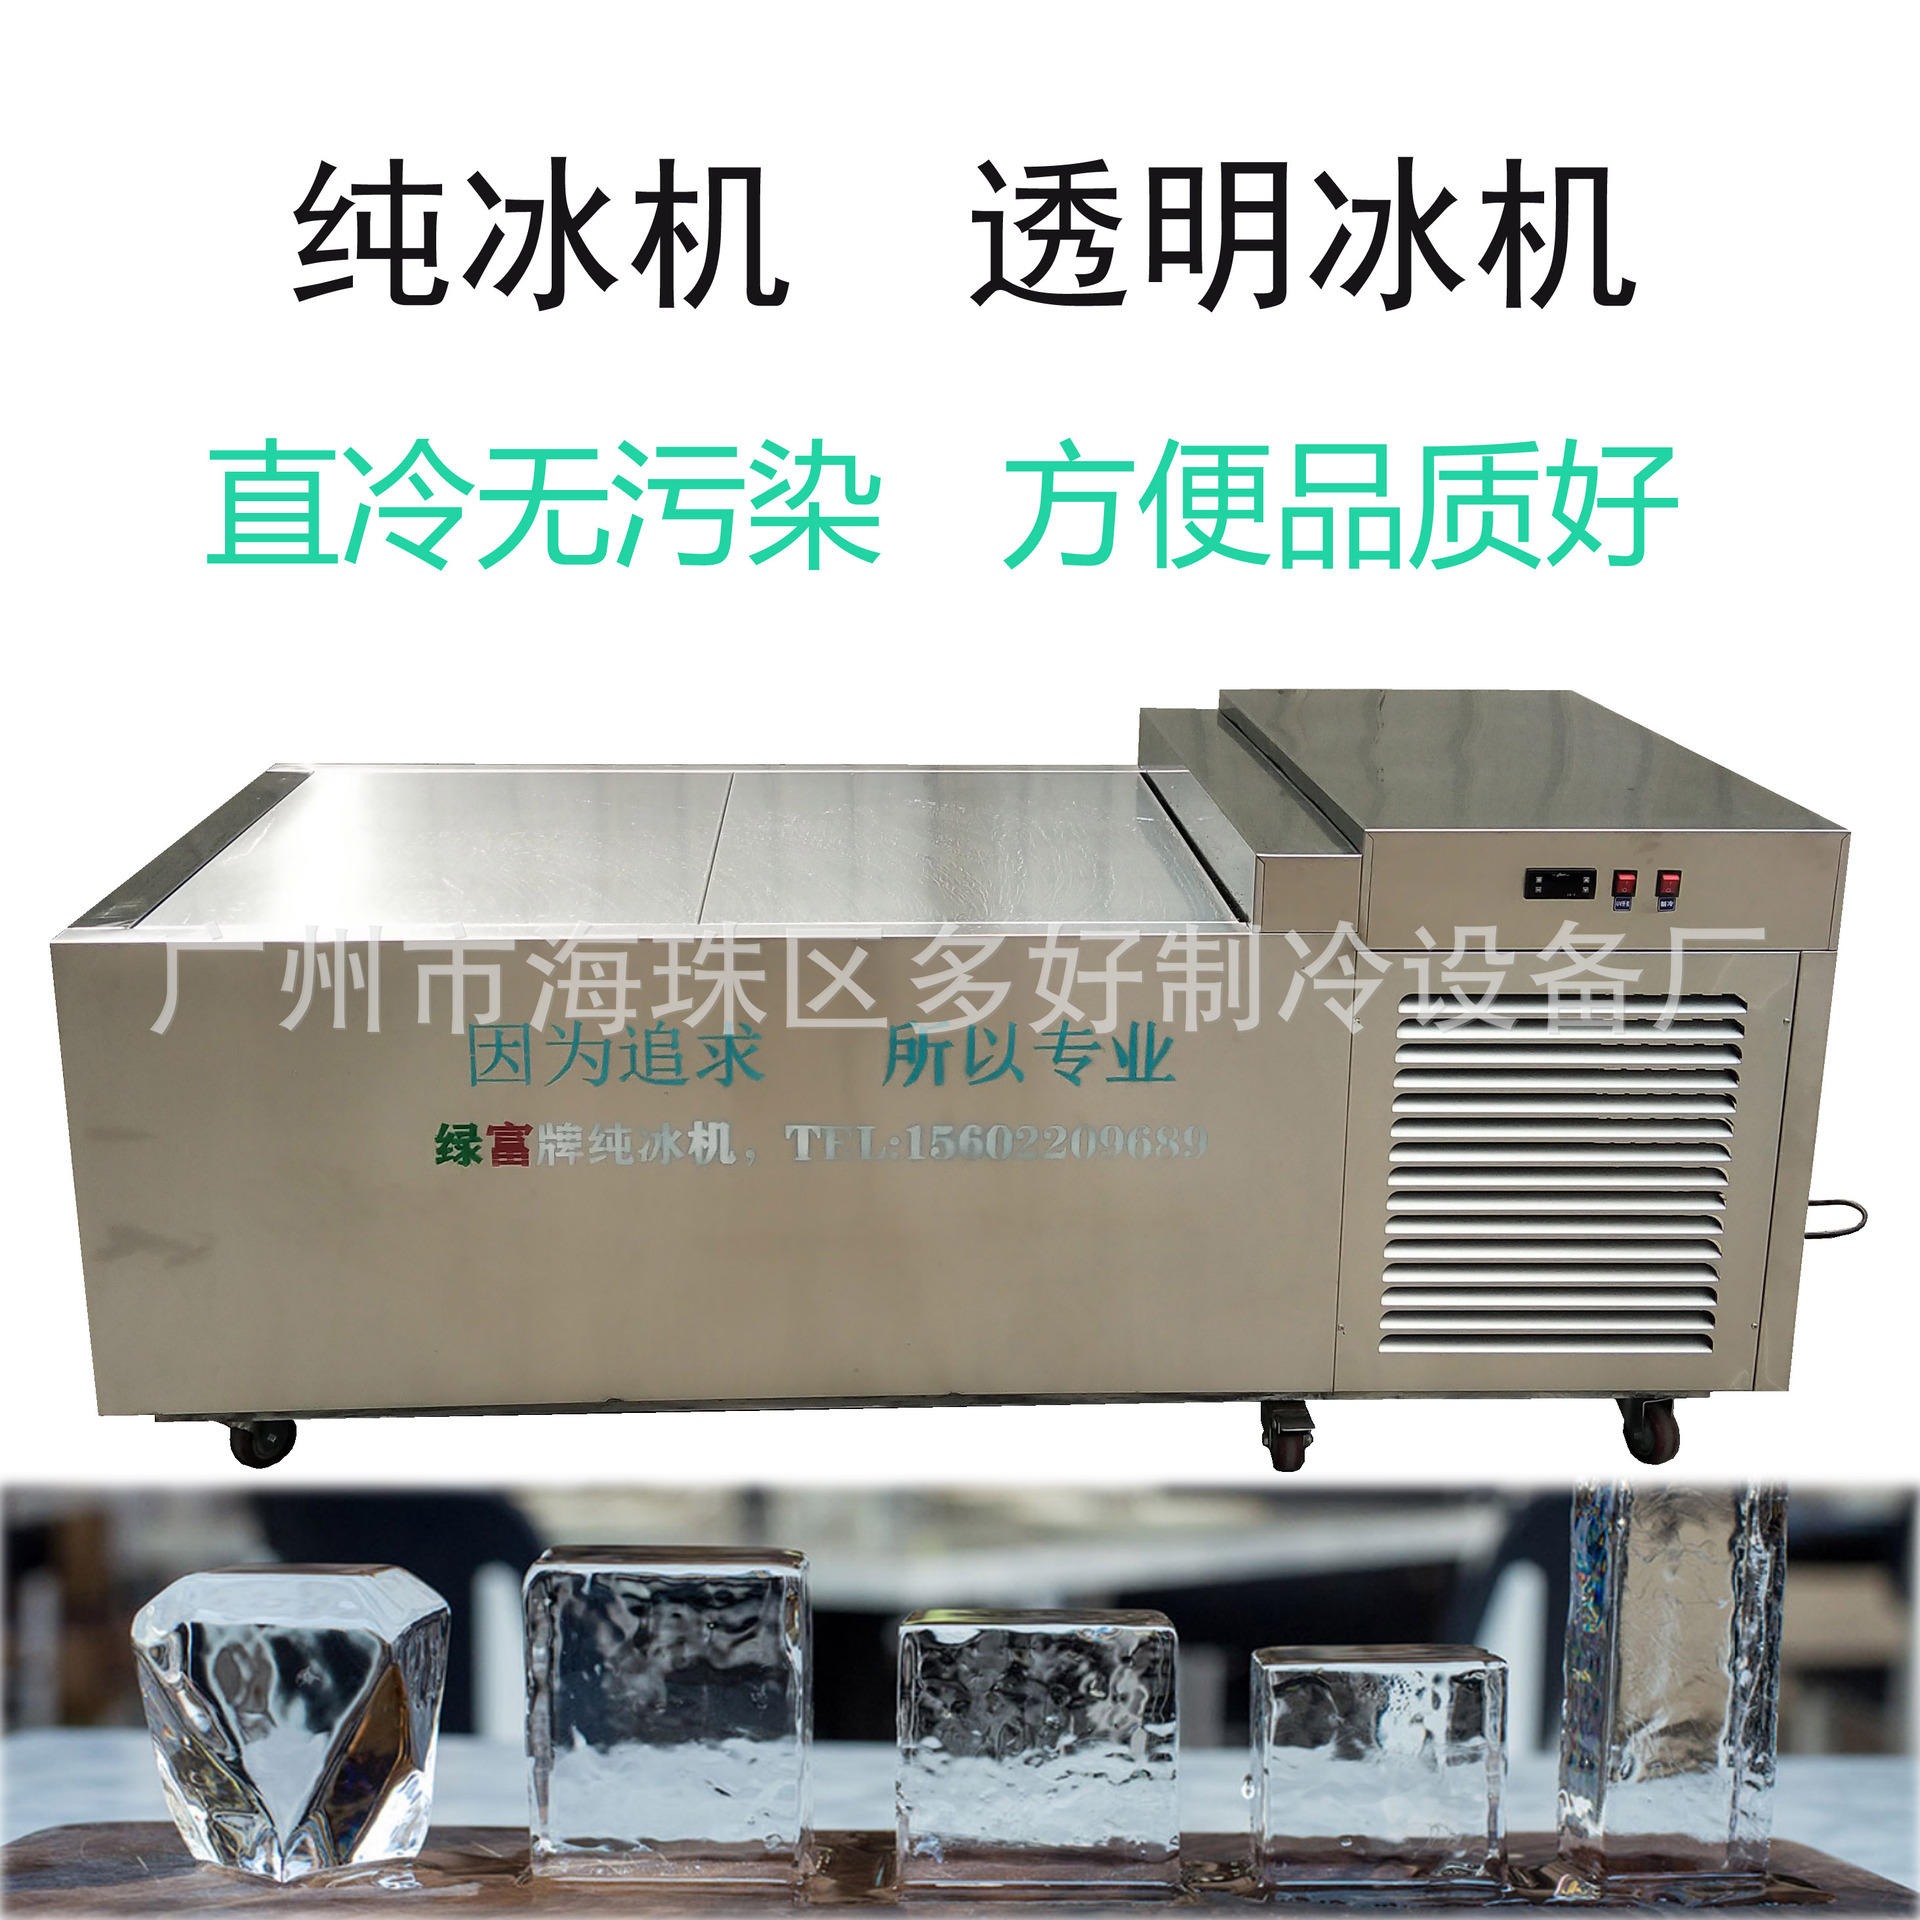 酒吧食用块冰机全国联保 高品质透明冰机 绿富牌食品级直冷透明冰块机7